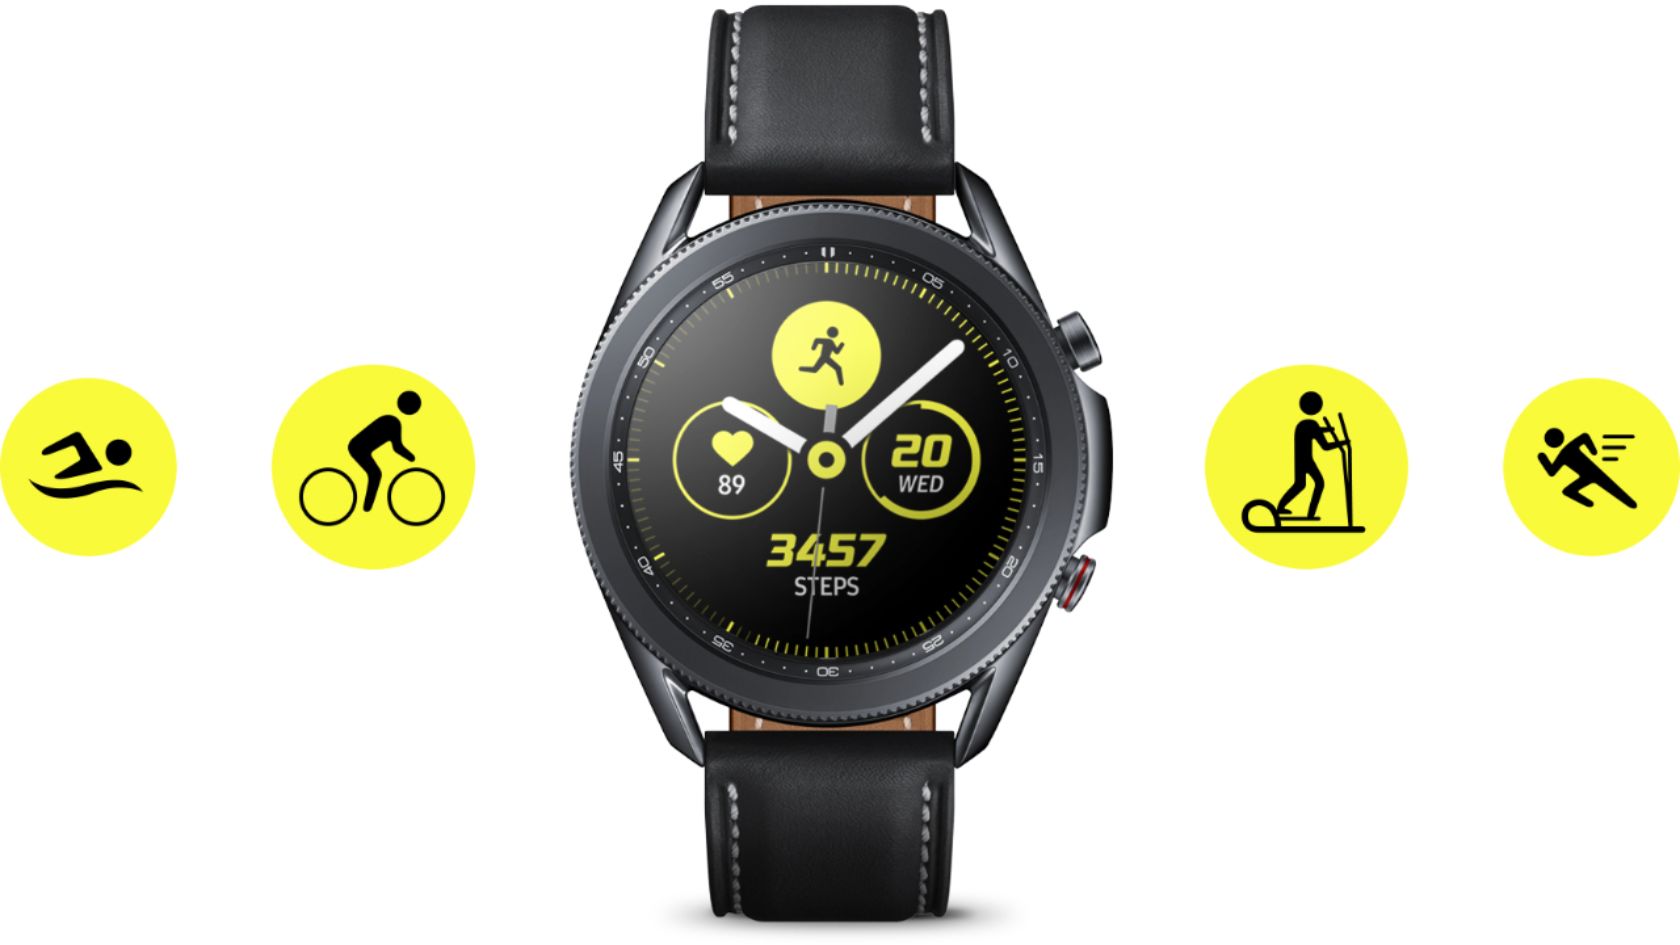 Best Buy Samsung Galaxy Watch3 Smartwatch 41mm Stainless Bt Mystic Bronze Sm R850nzdaxar